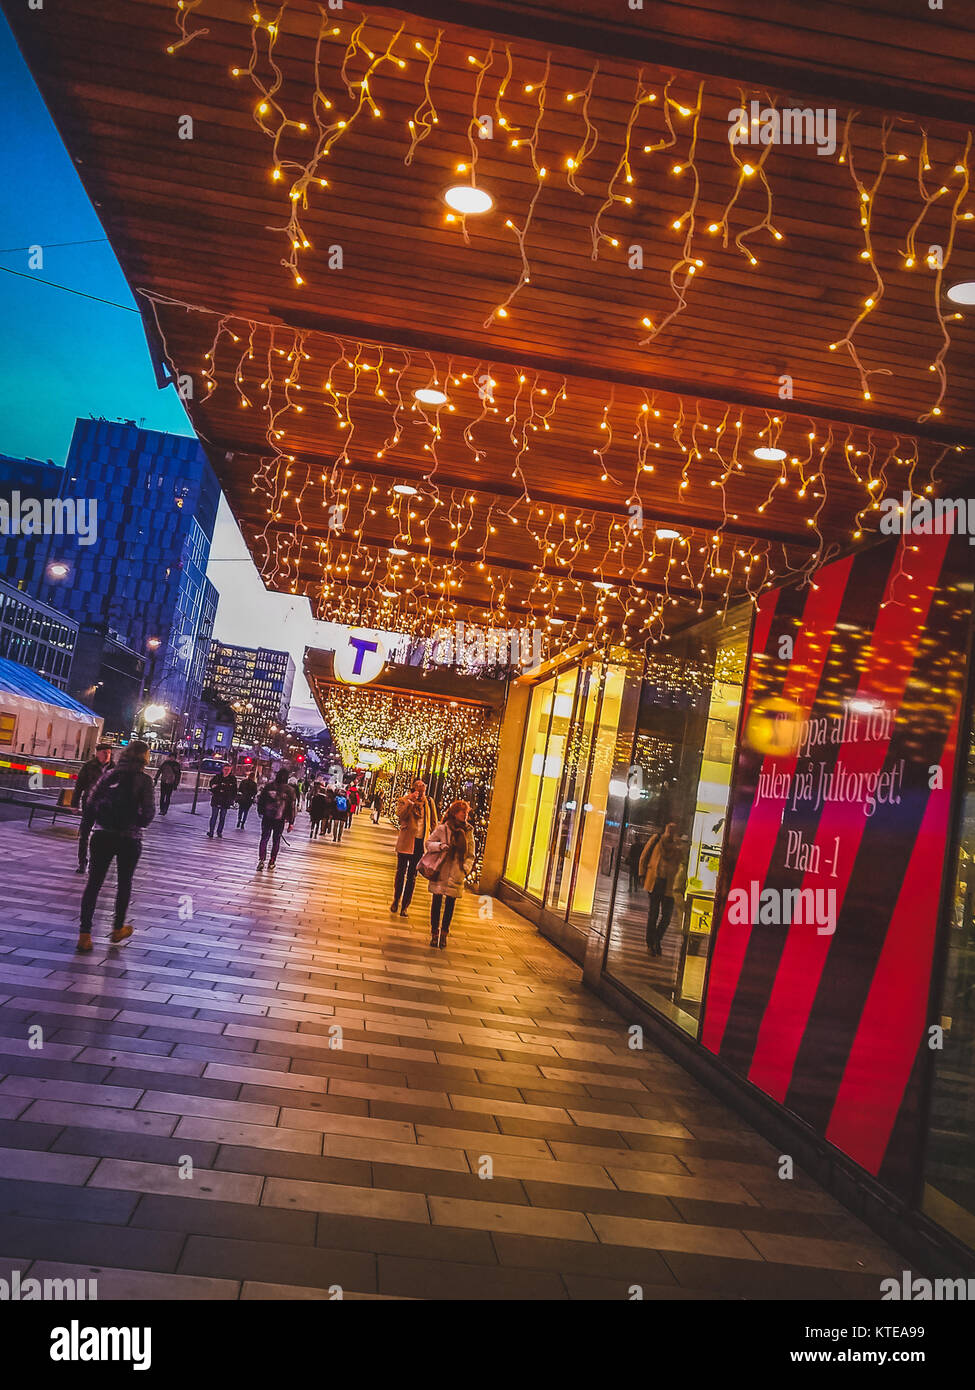 Les piétons qui se promènent dans un quartier commerçant avec des lumières de Noël décorant la devanture de la nuit, Stockholm, Suède Banque D'Images